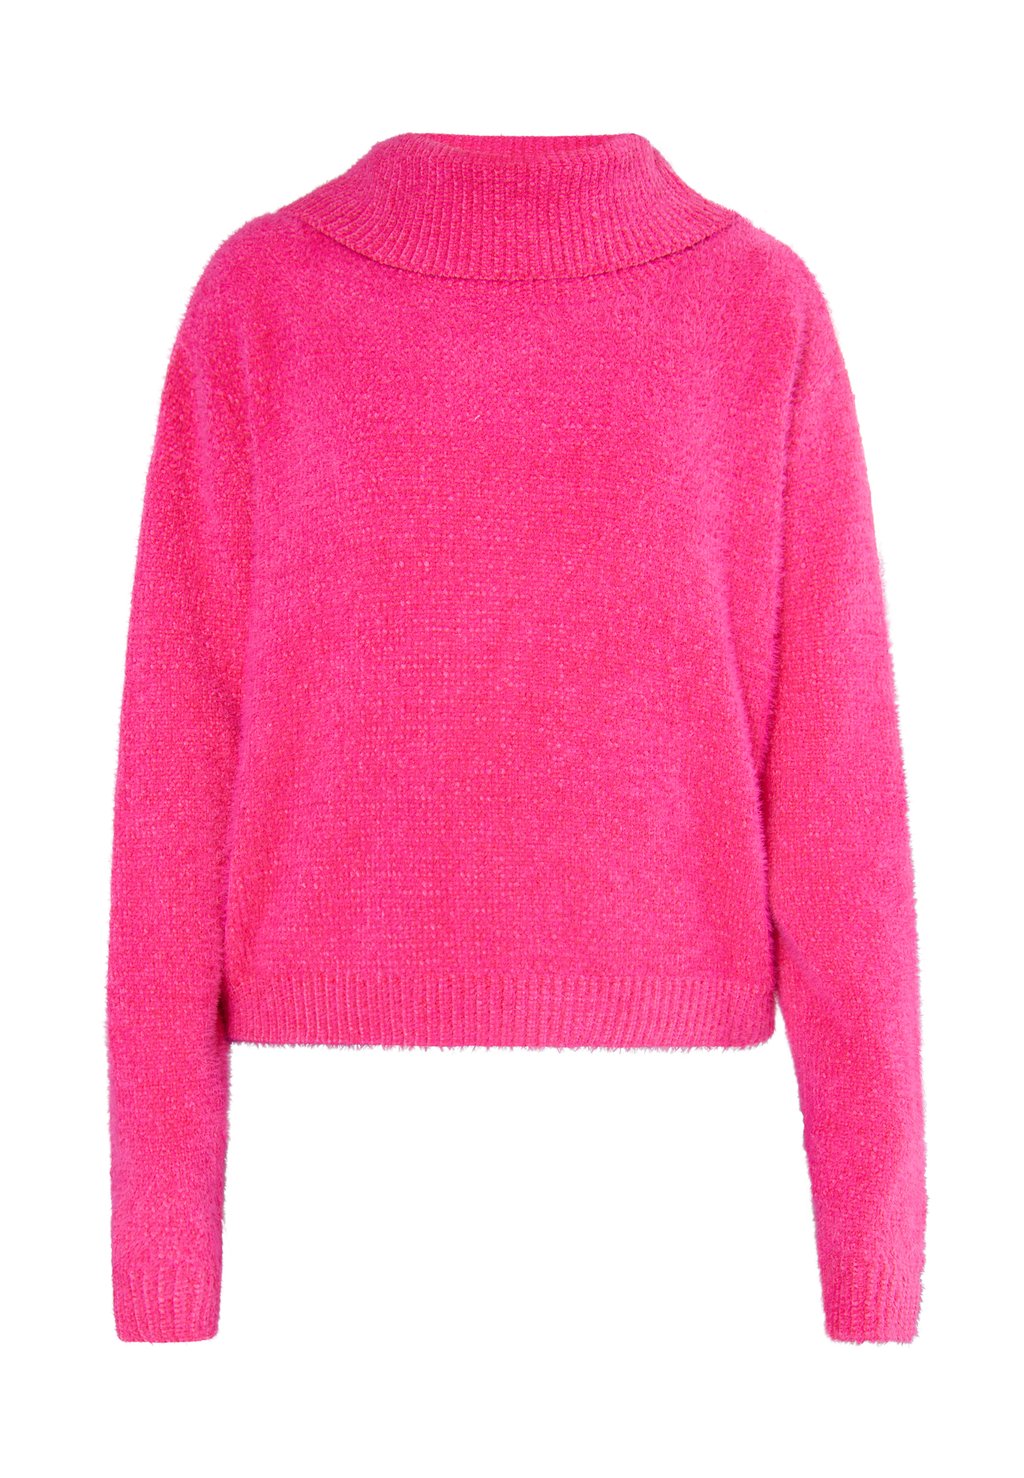 Свитер Keepsudry myMo, розовый свитер keepsudry mymo розовый